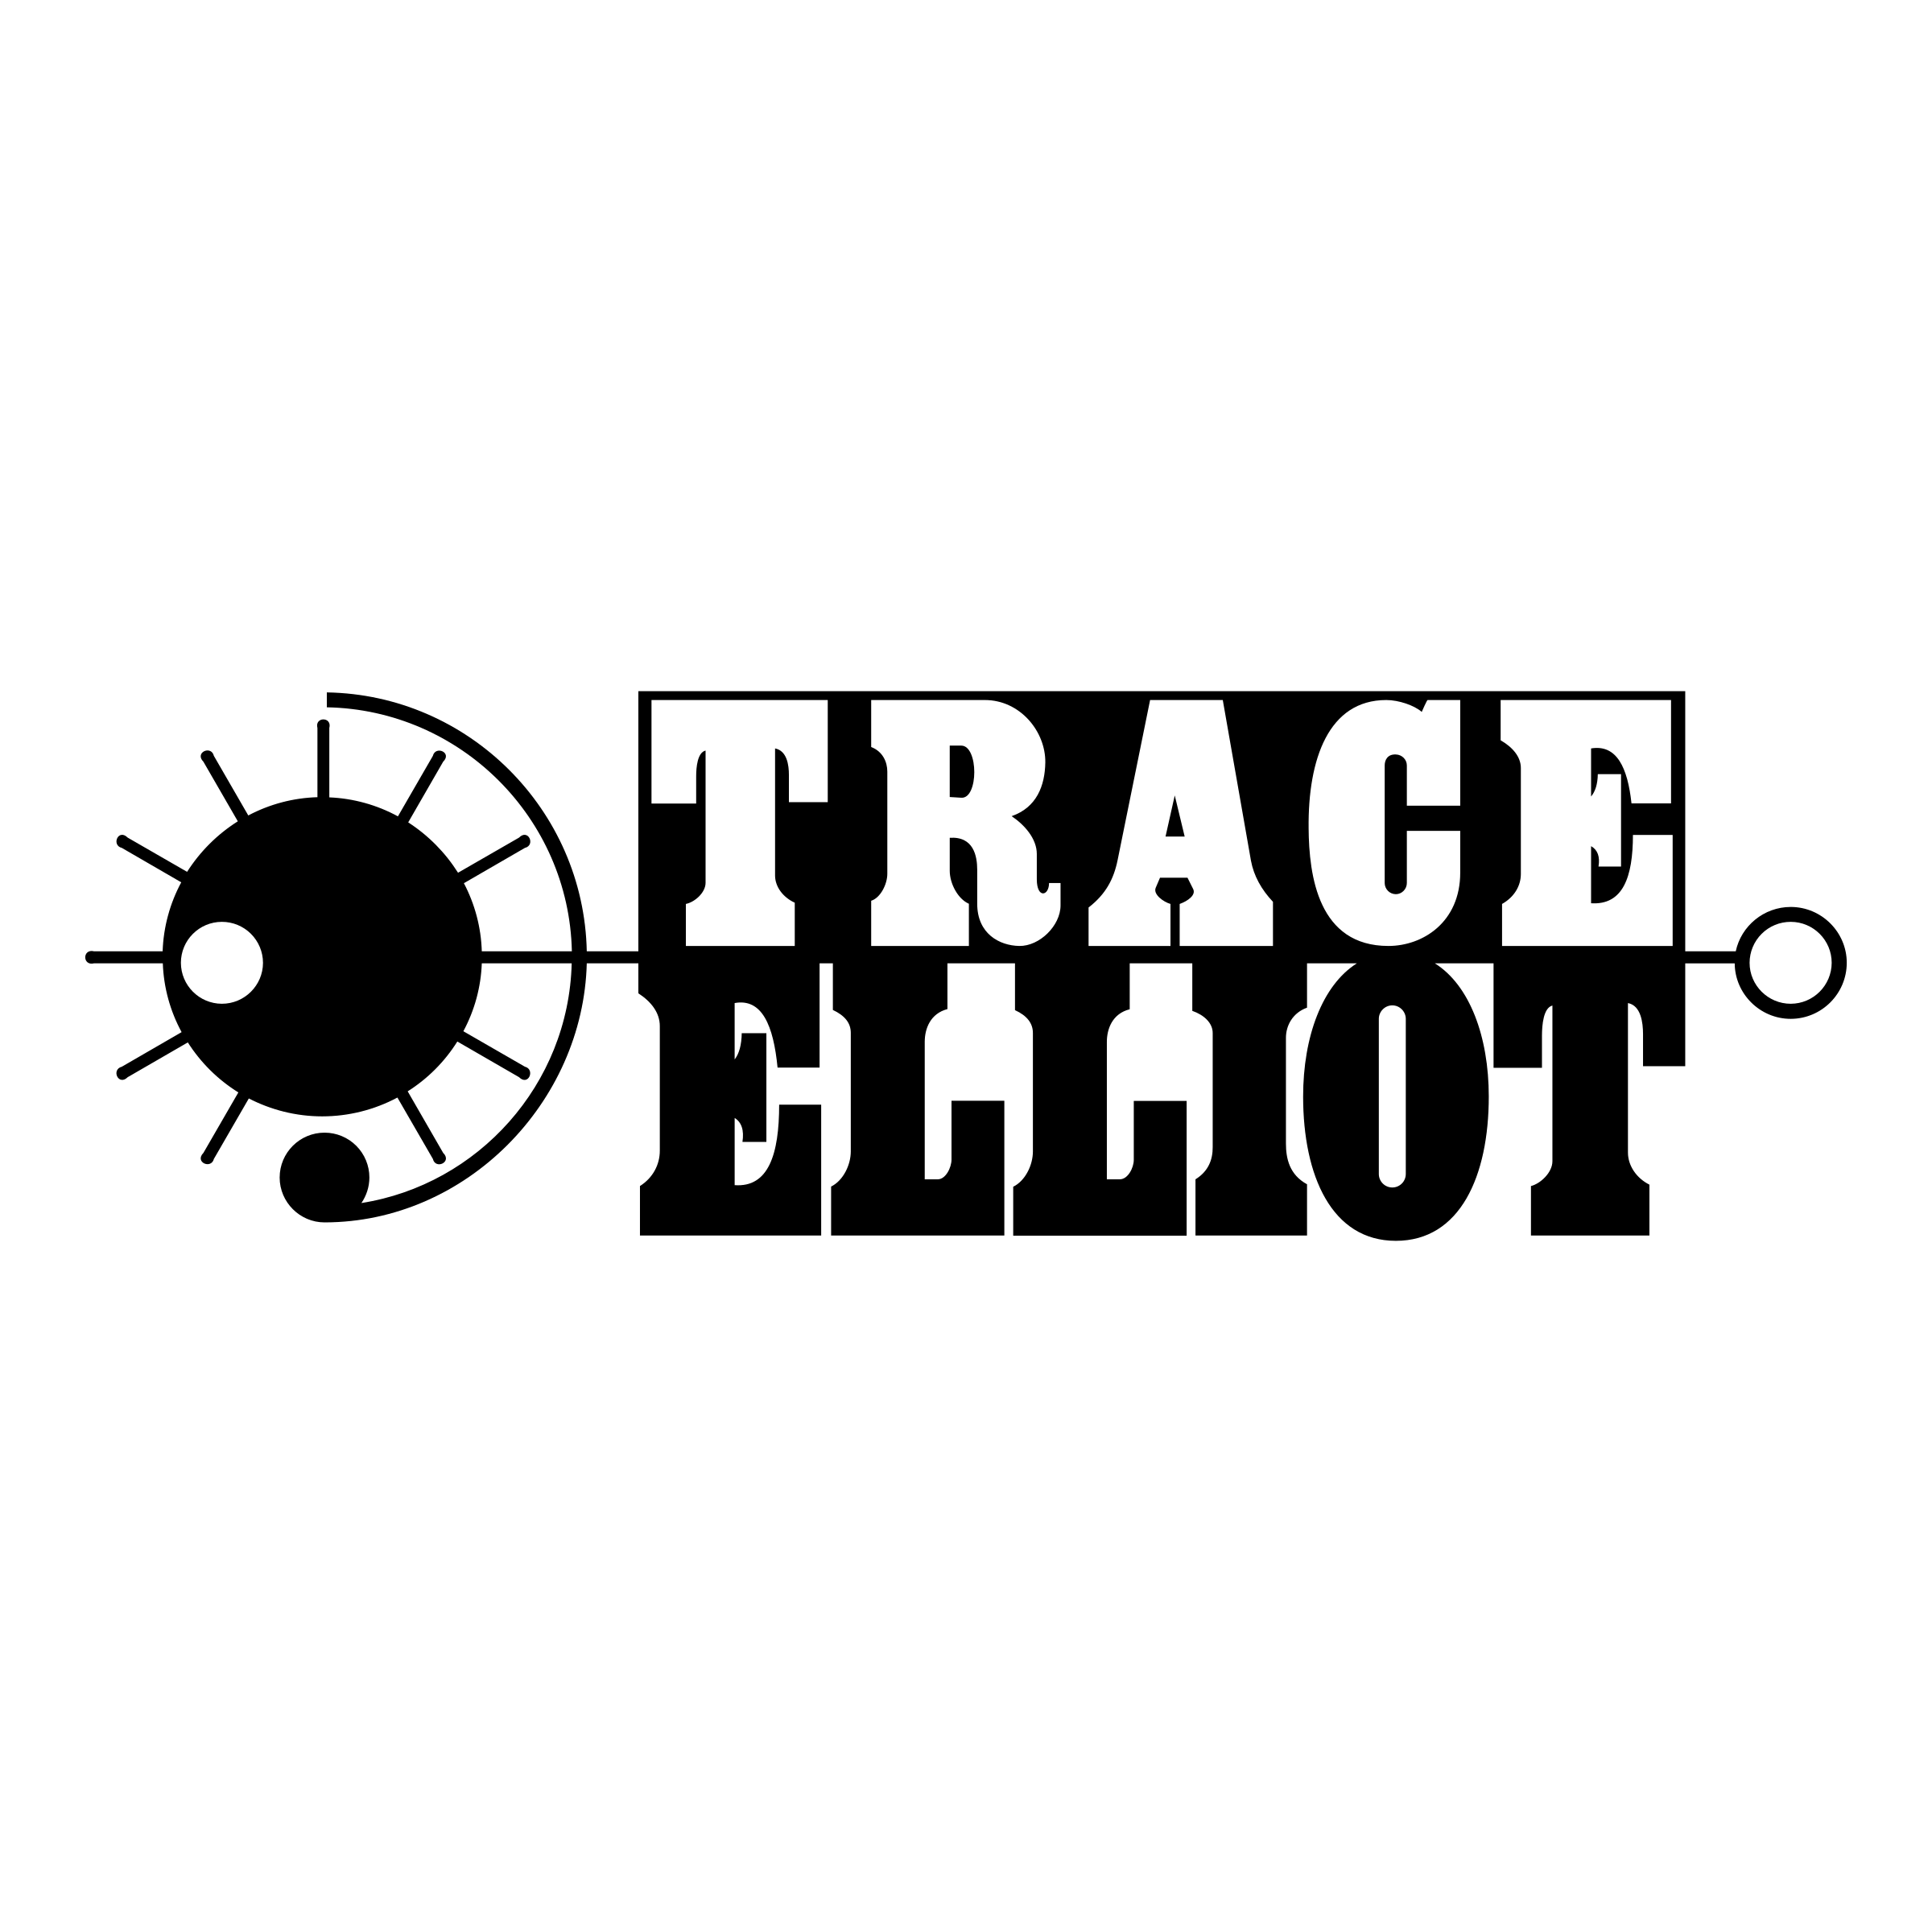 Elliot Logo - Trace Elliot Logo PNG Transparent & SVG Vector - Freebie Supply